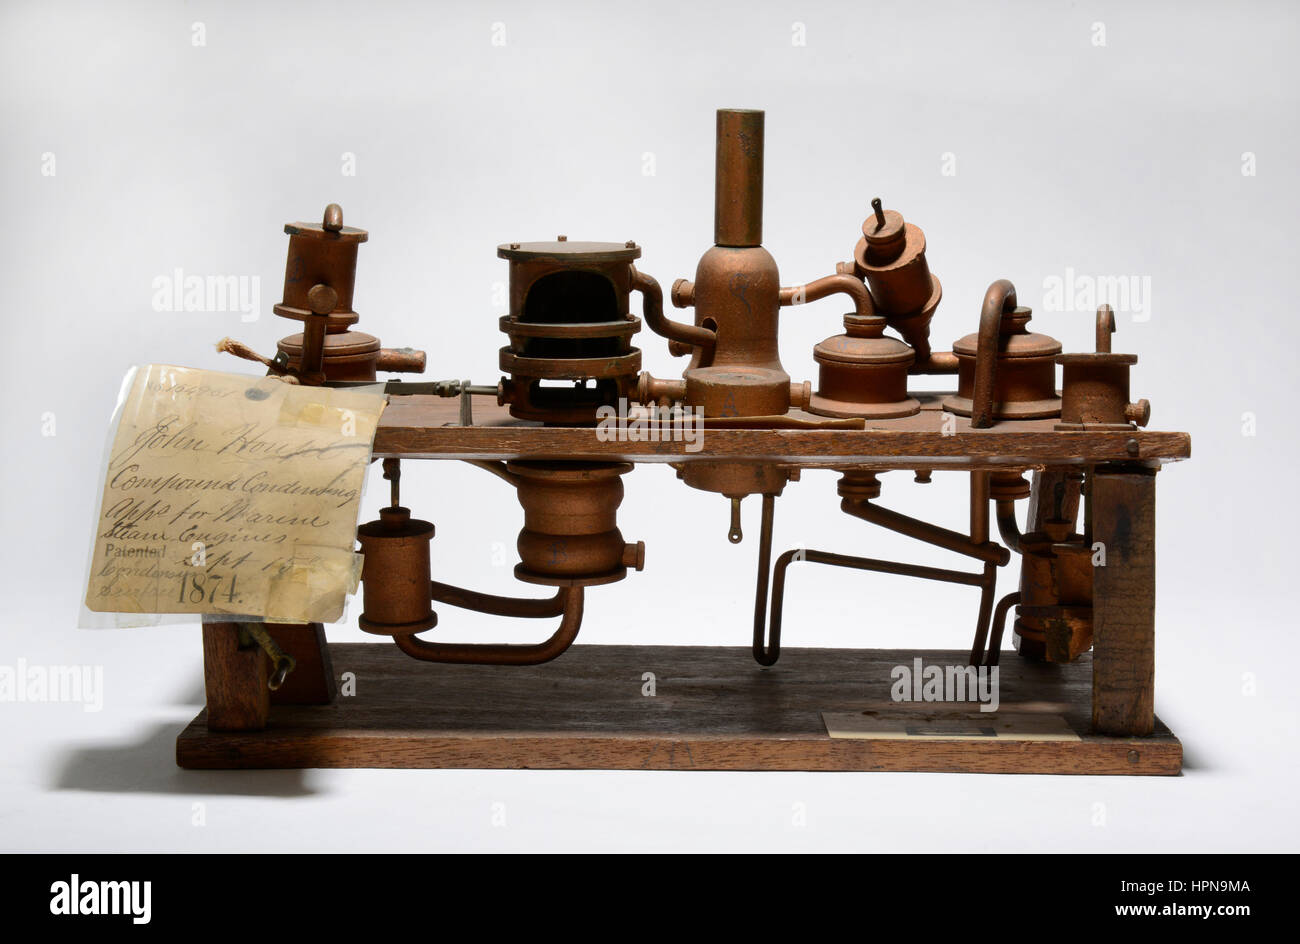 Il brevetto per modello "miglioramento nel composto apparato di condensazione per Marine motori a vapore, concessa il 15 settembre 1874. Inventore: Giovanni Houpt. Foto Stock